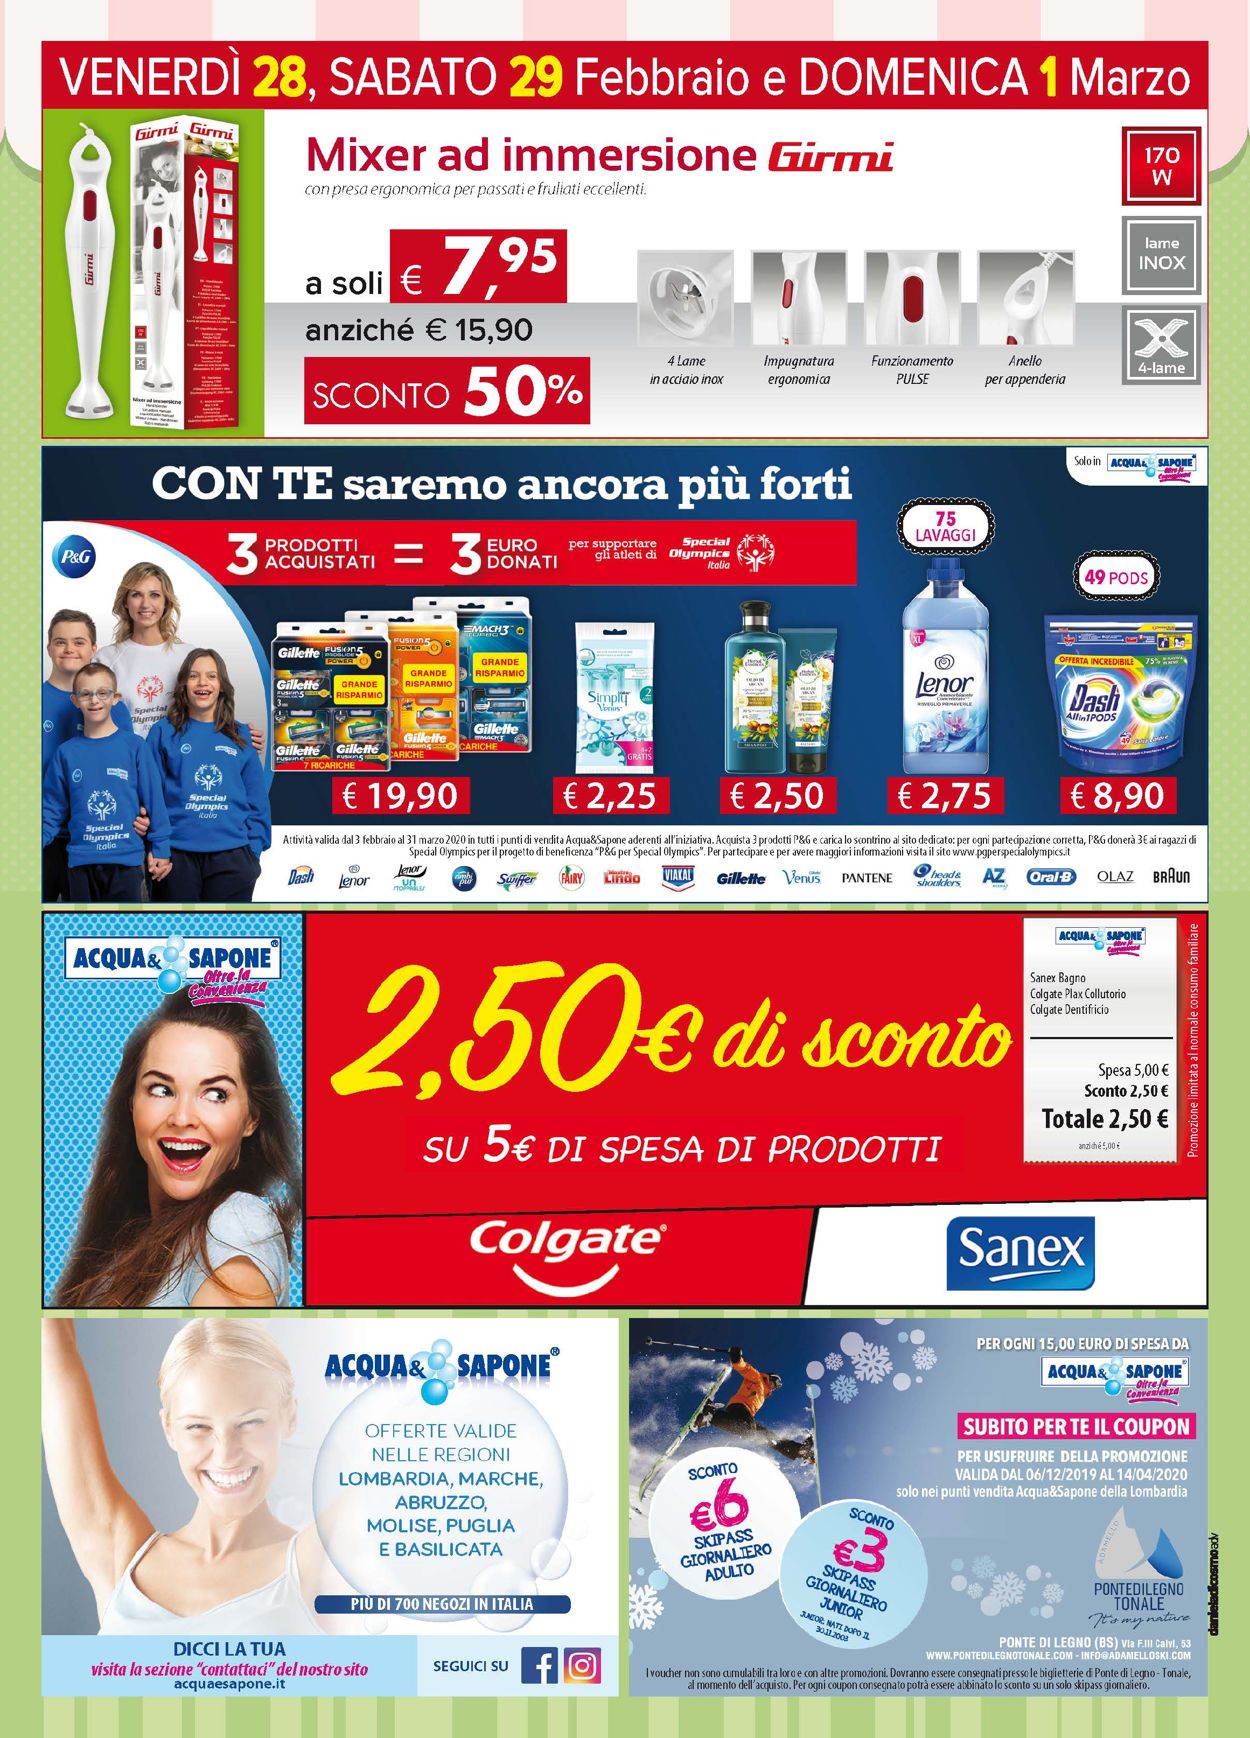 Acqua & Sapone Volantino attuale 25/02 - 08/03/2020 [15]